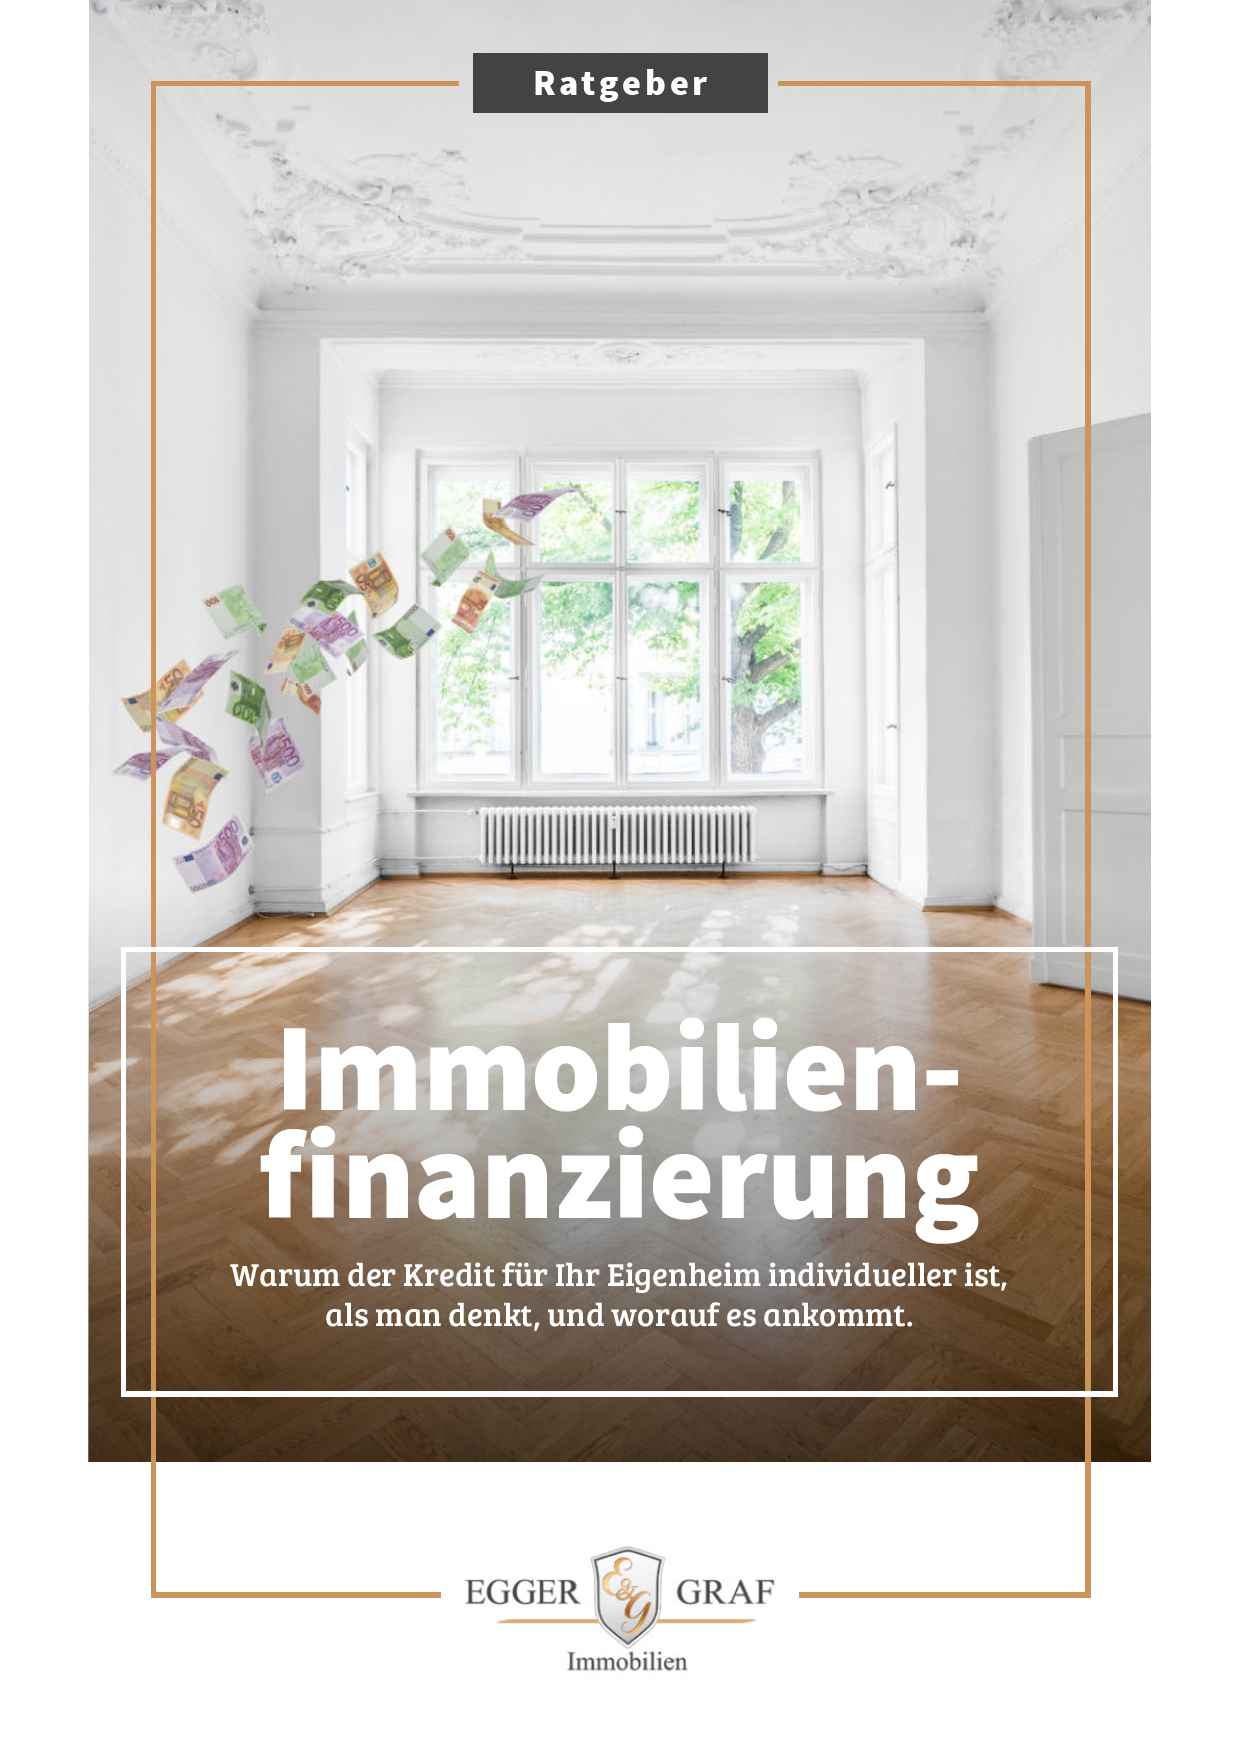 Ratgeber: Immobilie Finanzieren München